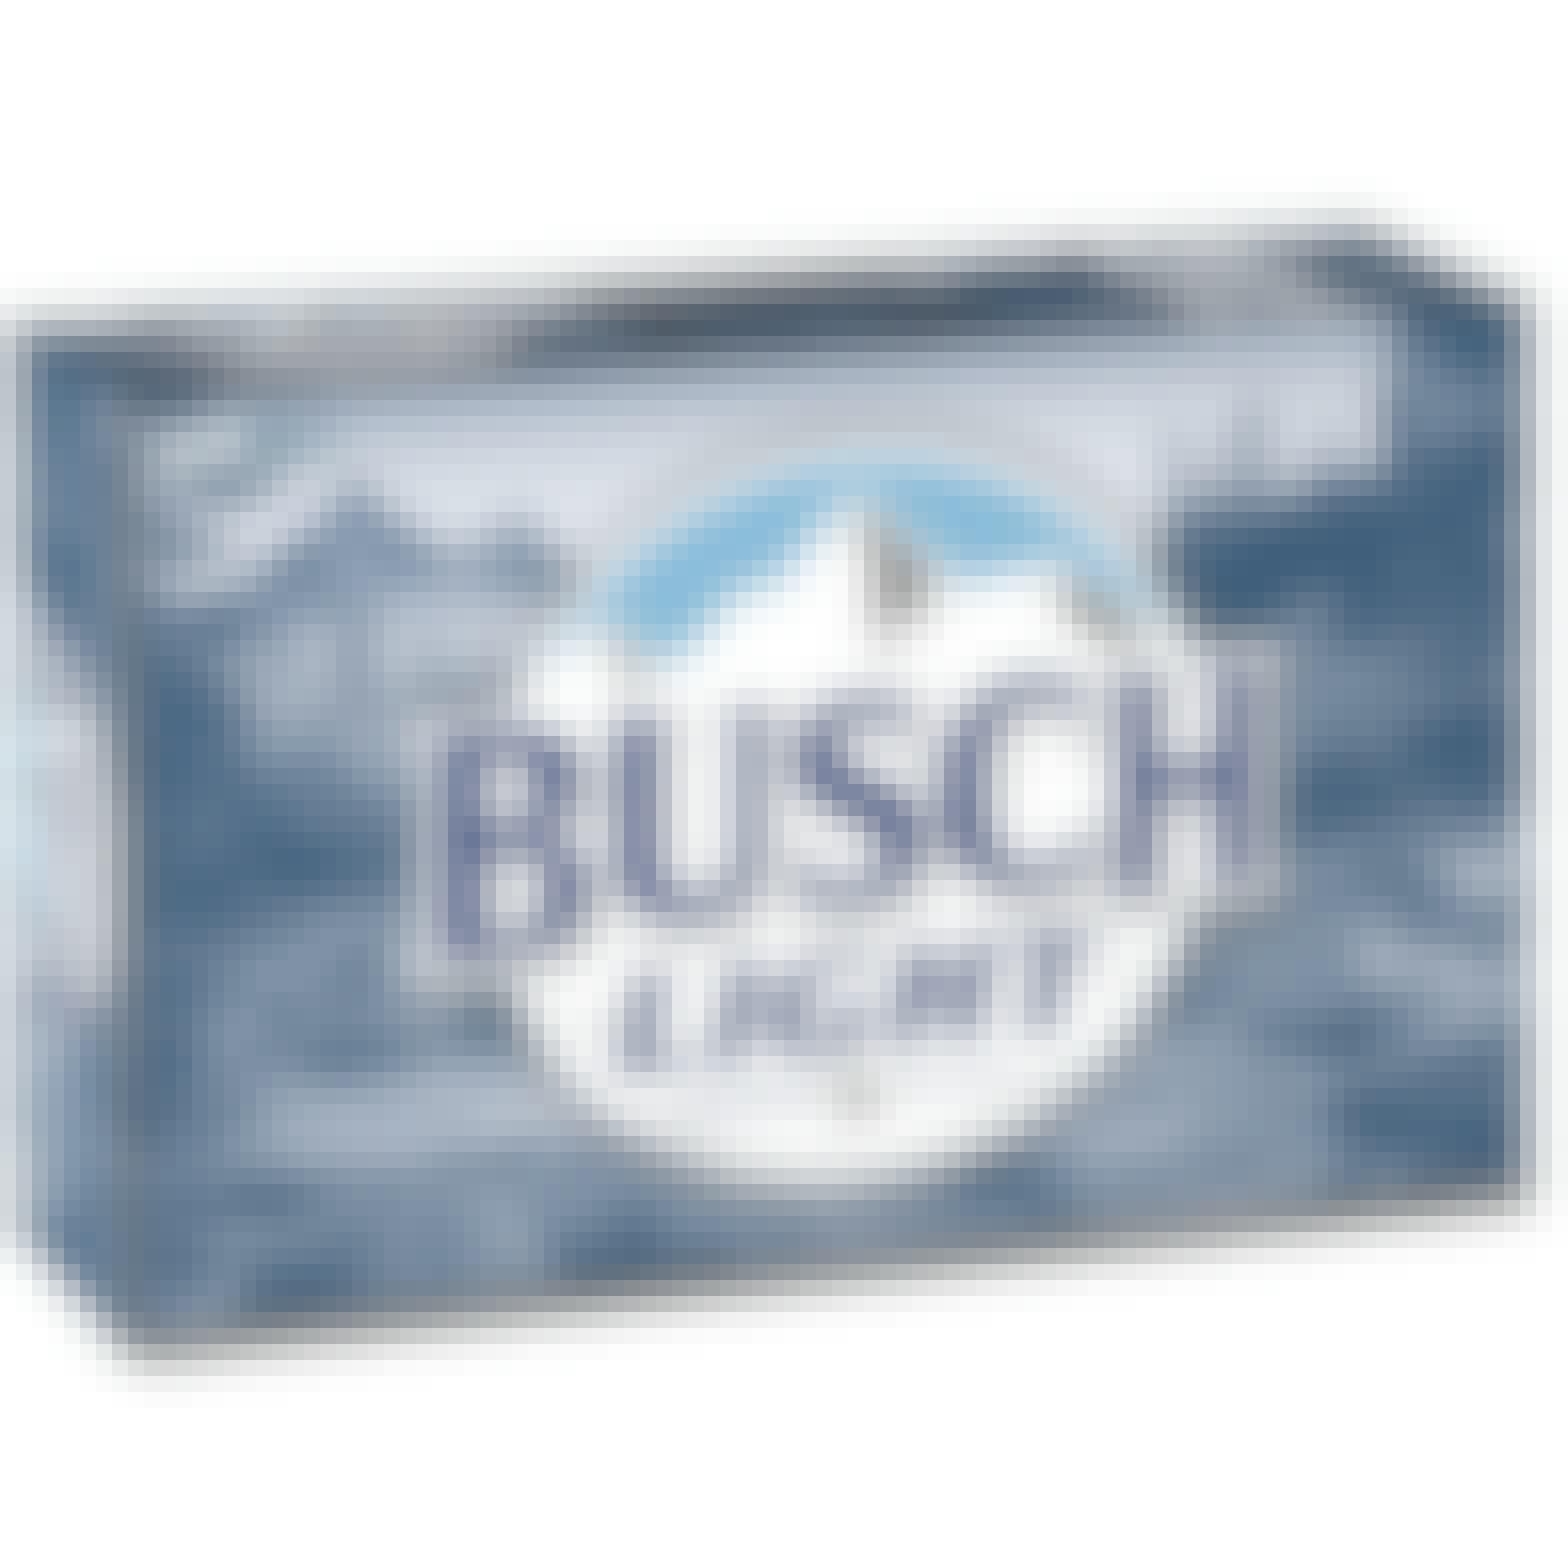 Busch Light 24 pack 12 oz.